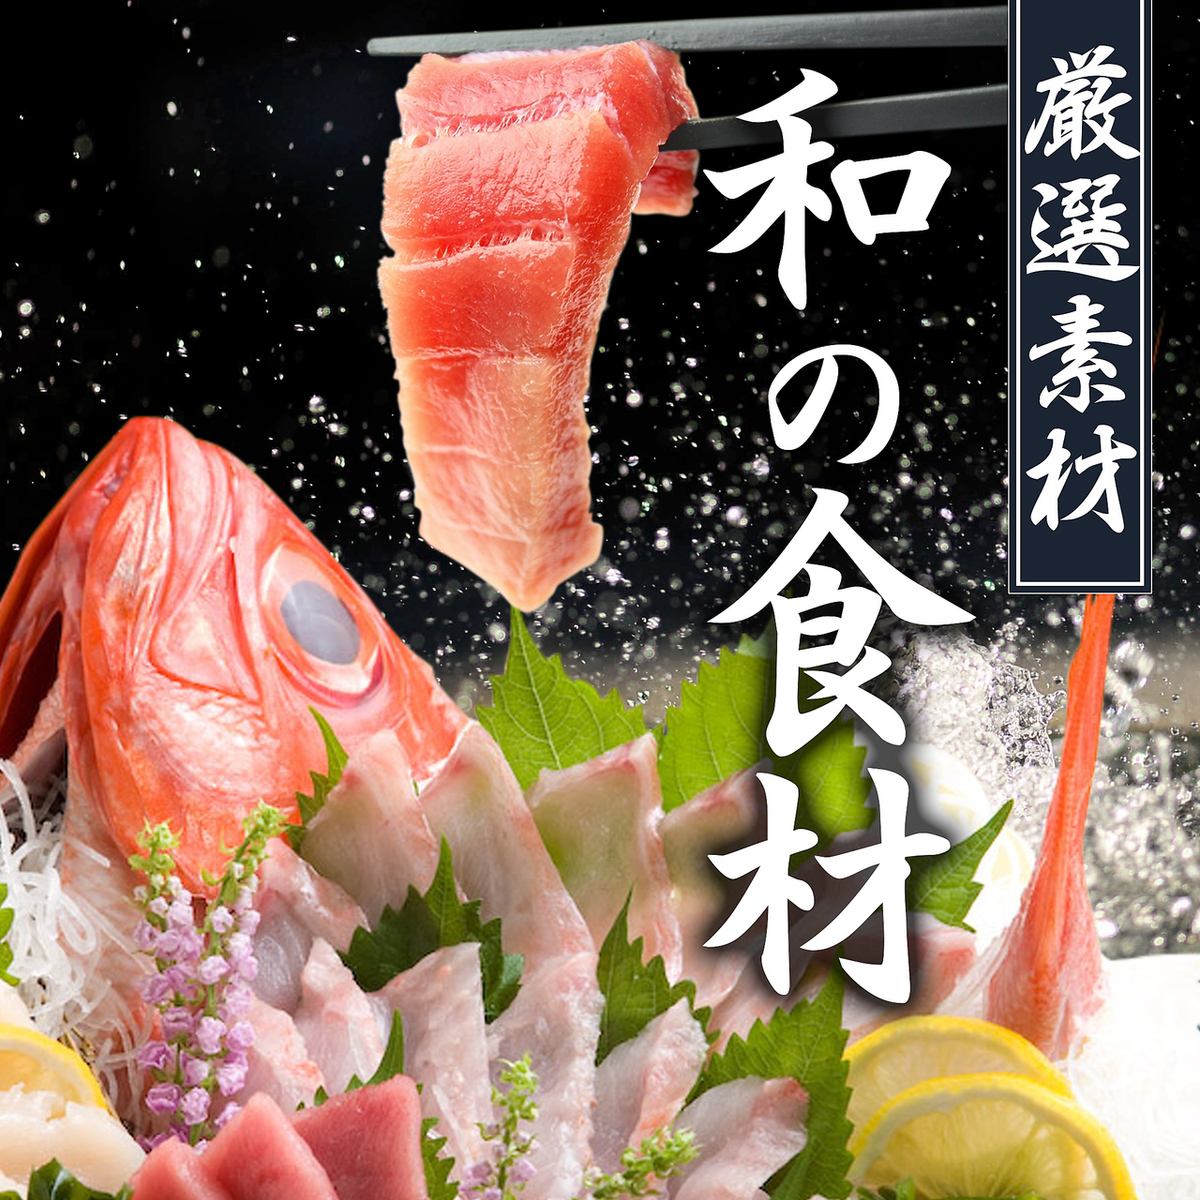 用从渔港直送的鲜鱼和日本特色菜为您的宴会增添色彩。